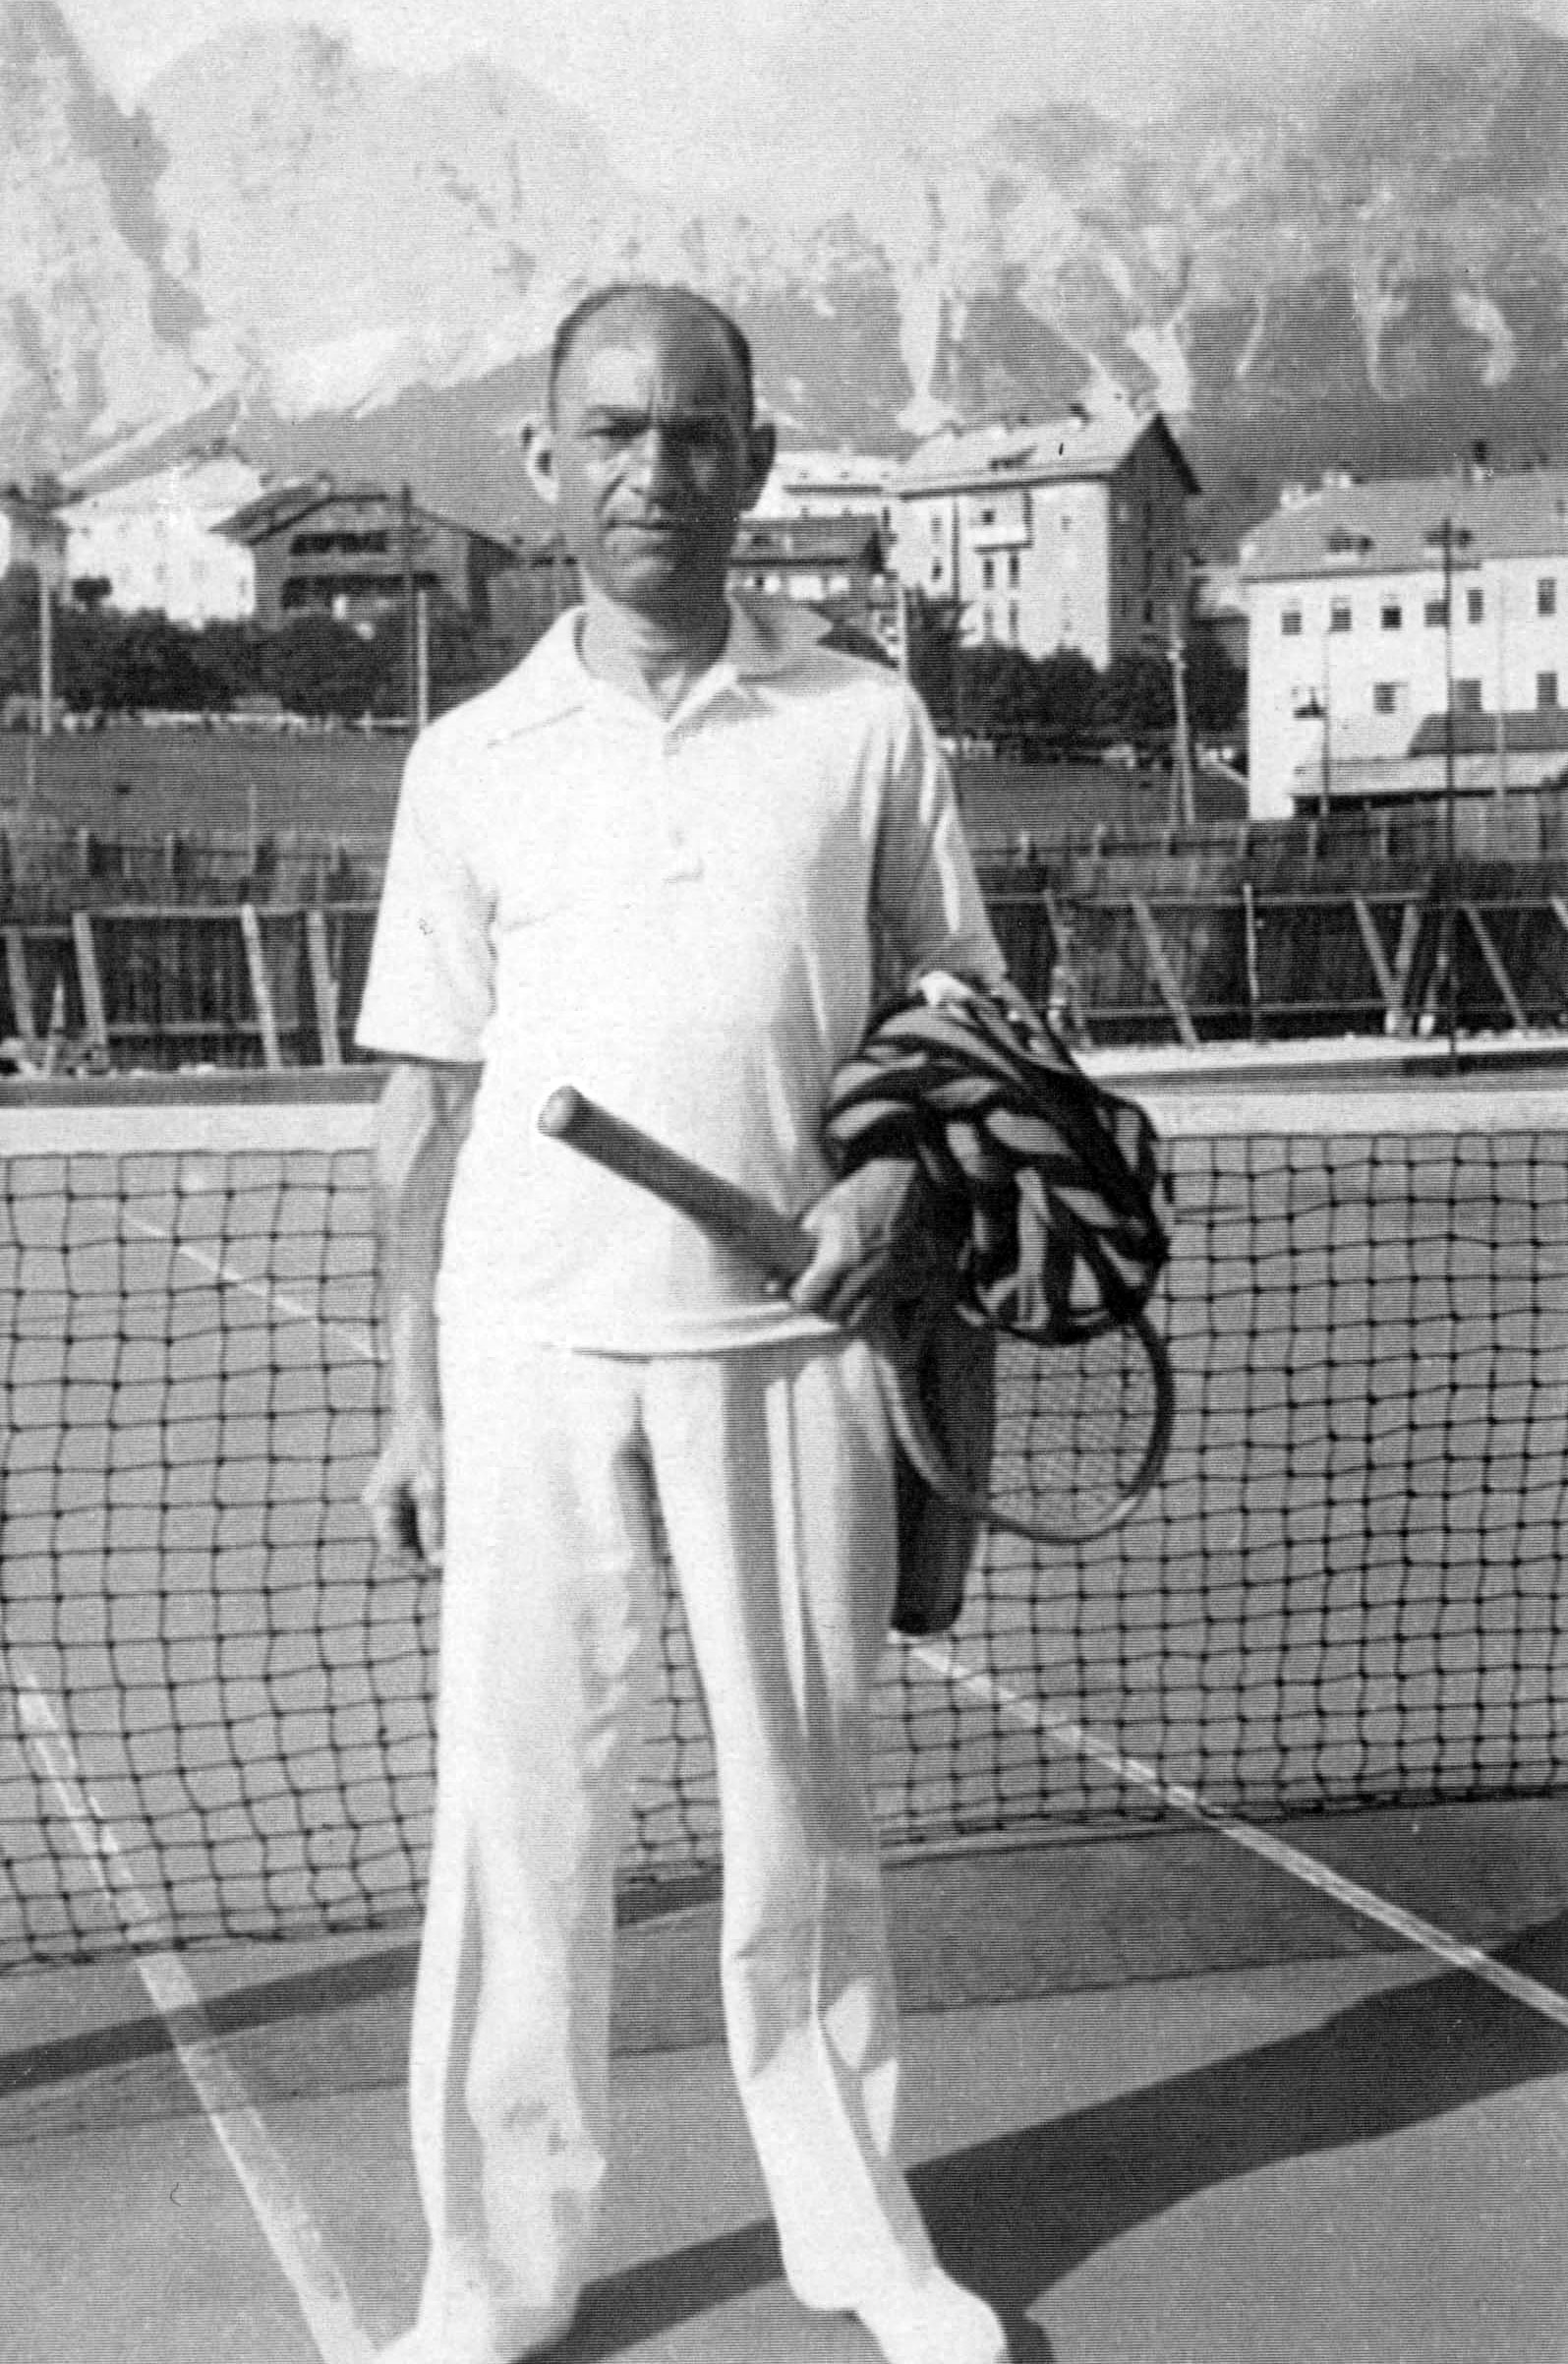 פרנץ קרליבך ממיינץ, גרמניה, במגרש טניס, לפני המלחמה